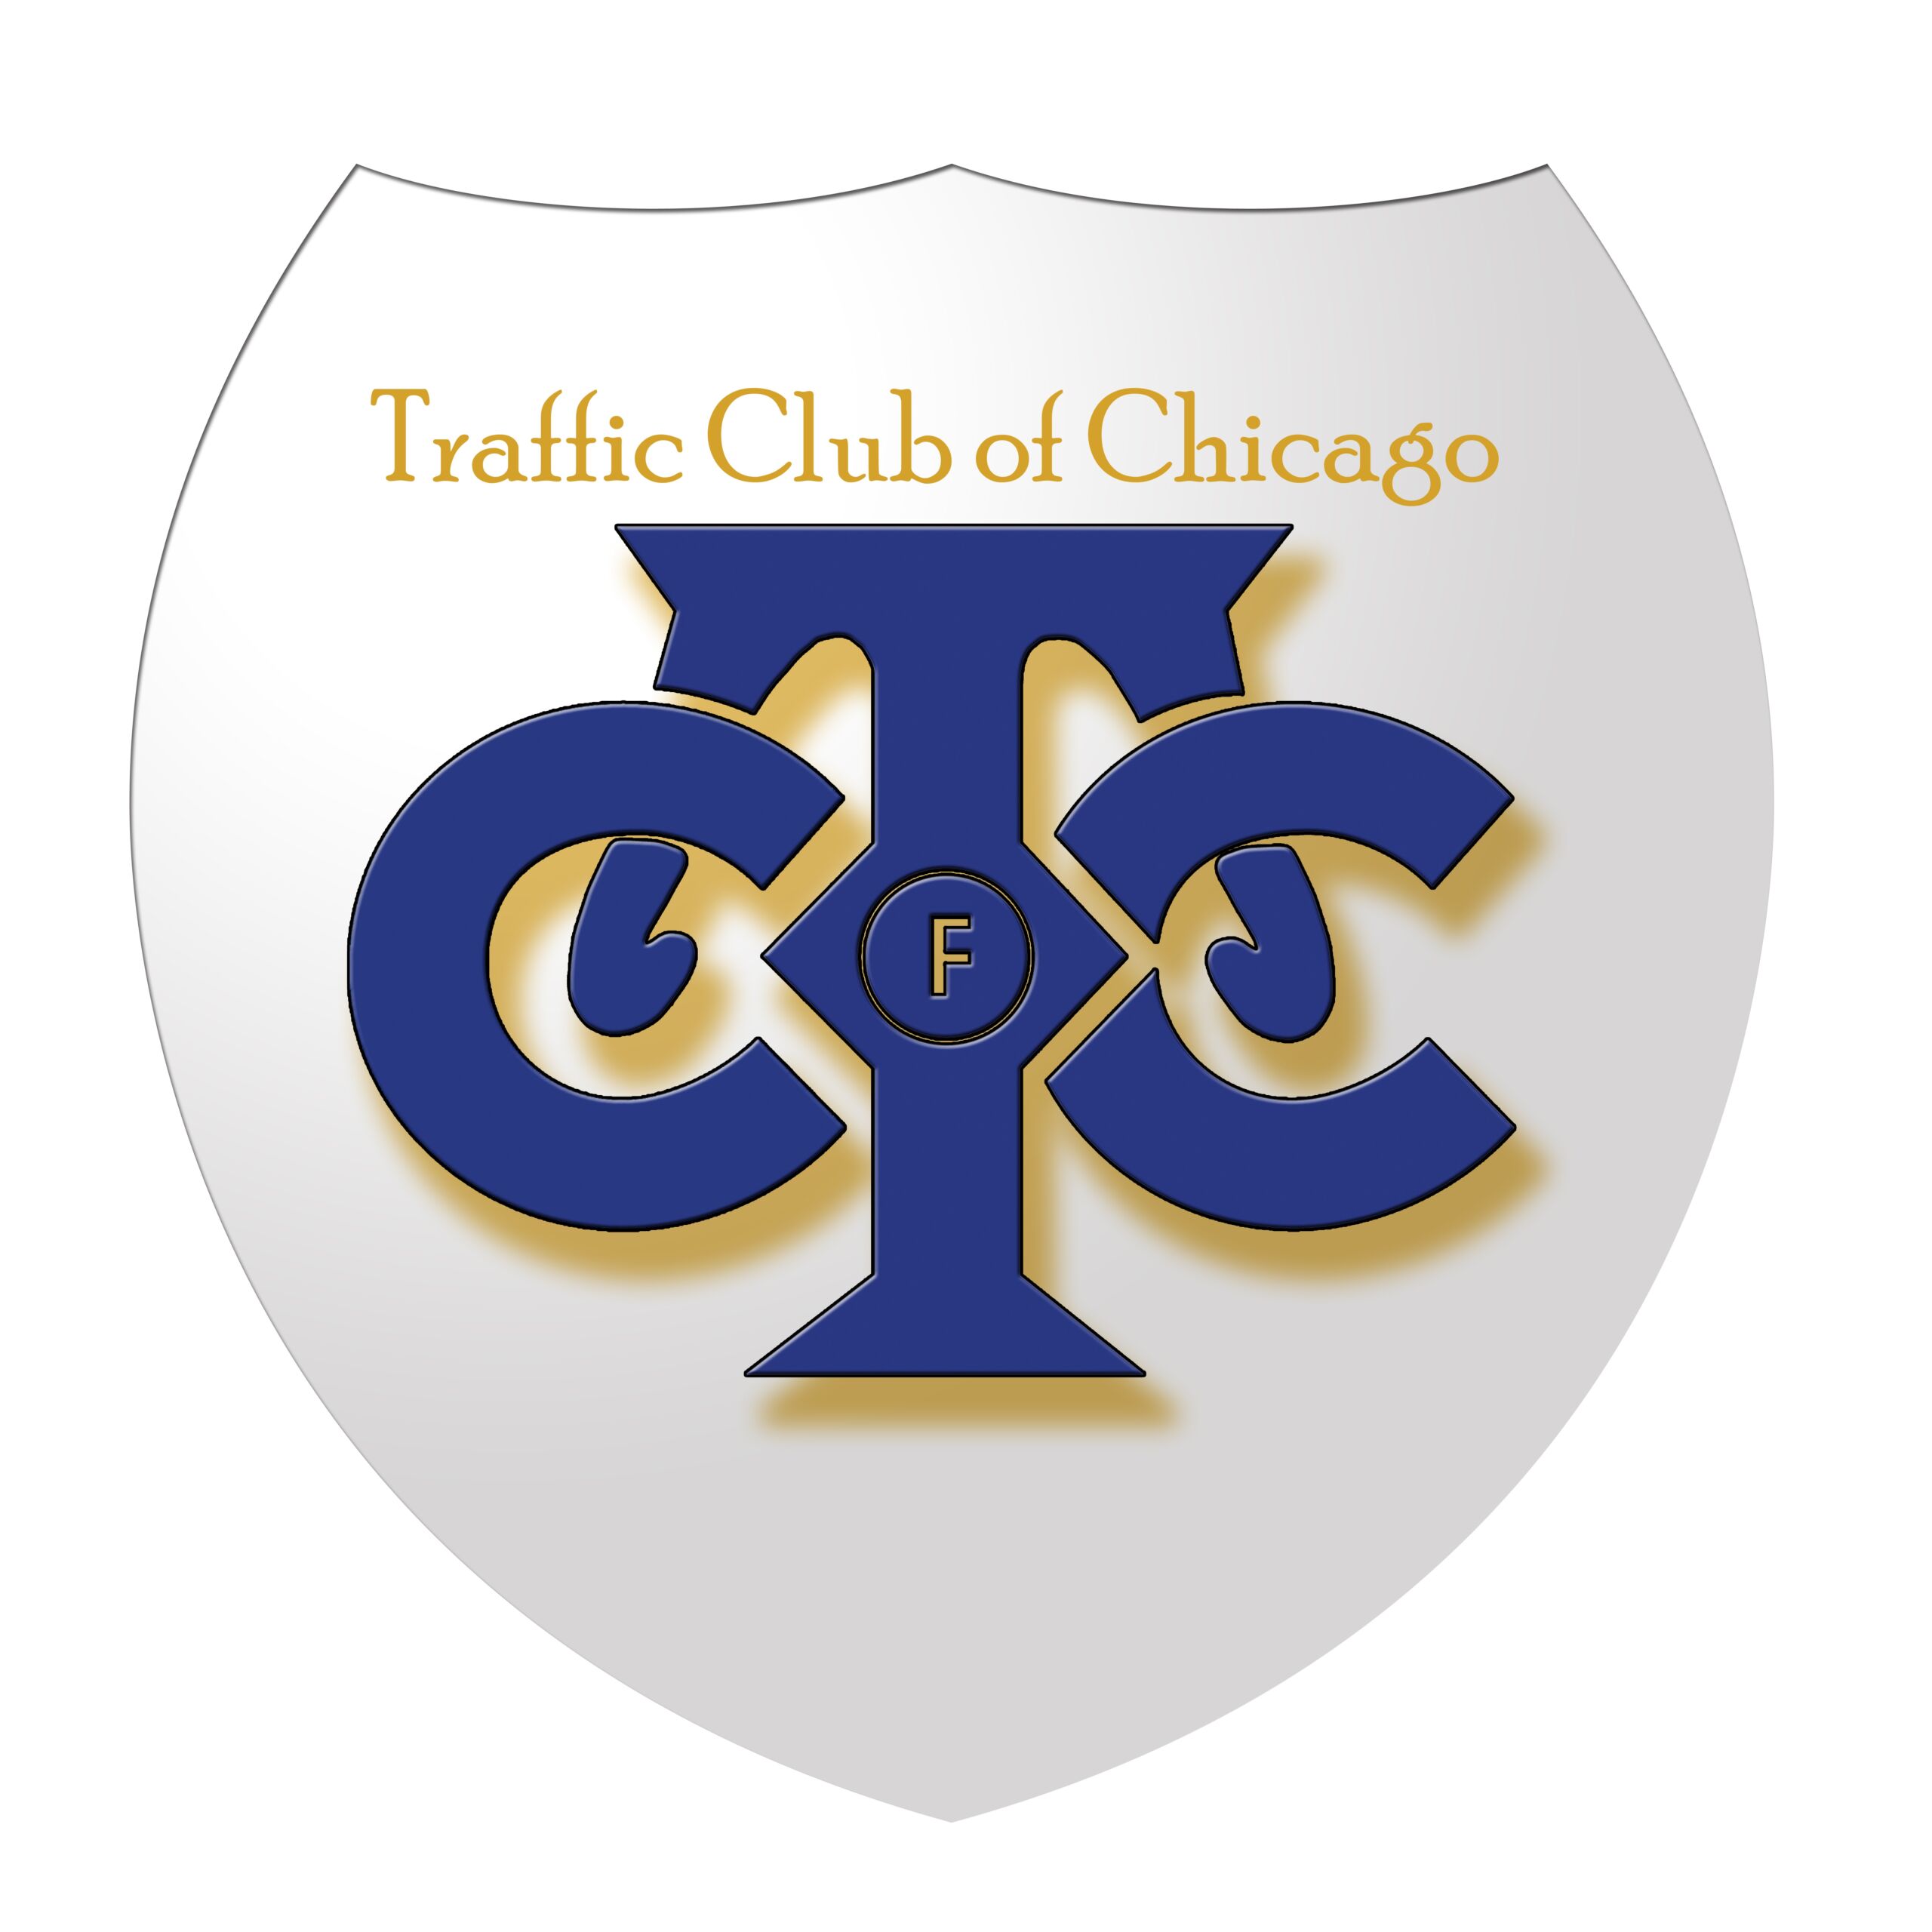 Traffic Club of Chicago logo